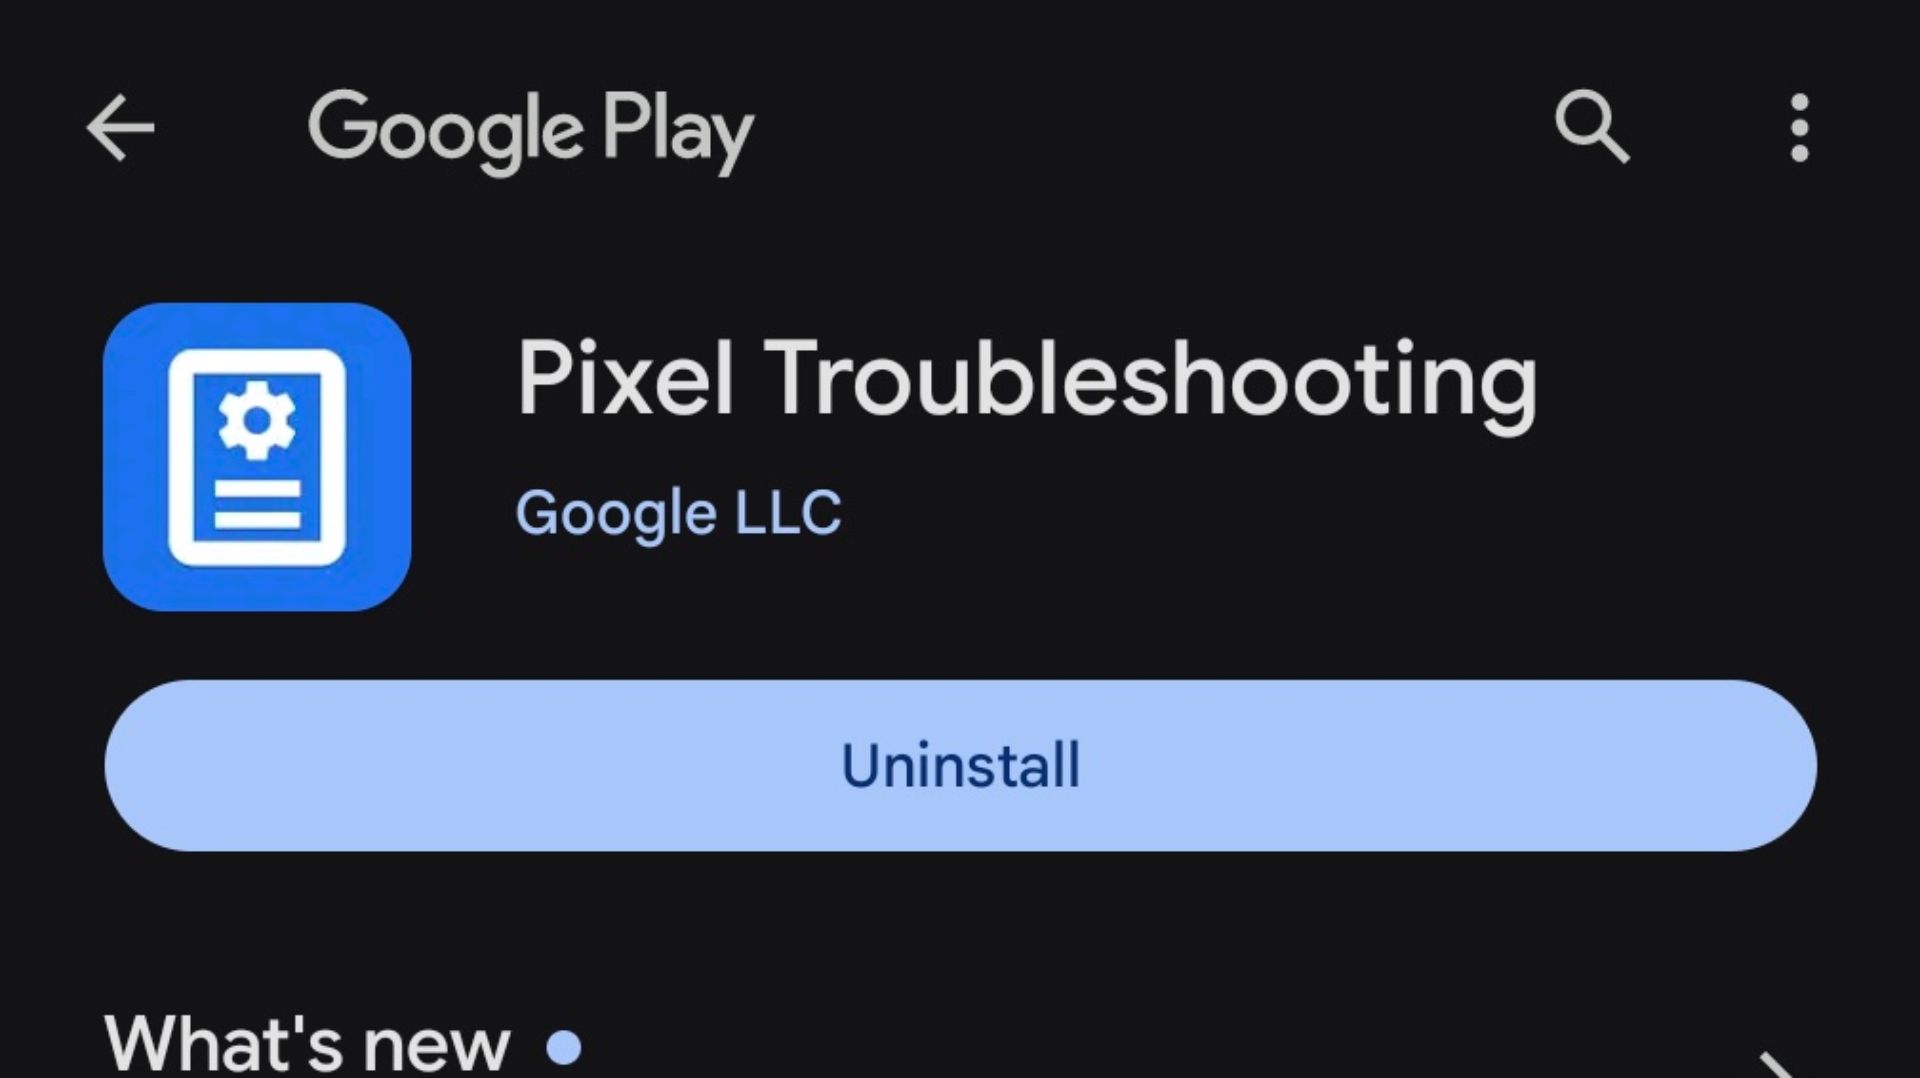 Pixel troubleshooting app